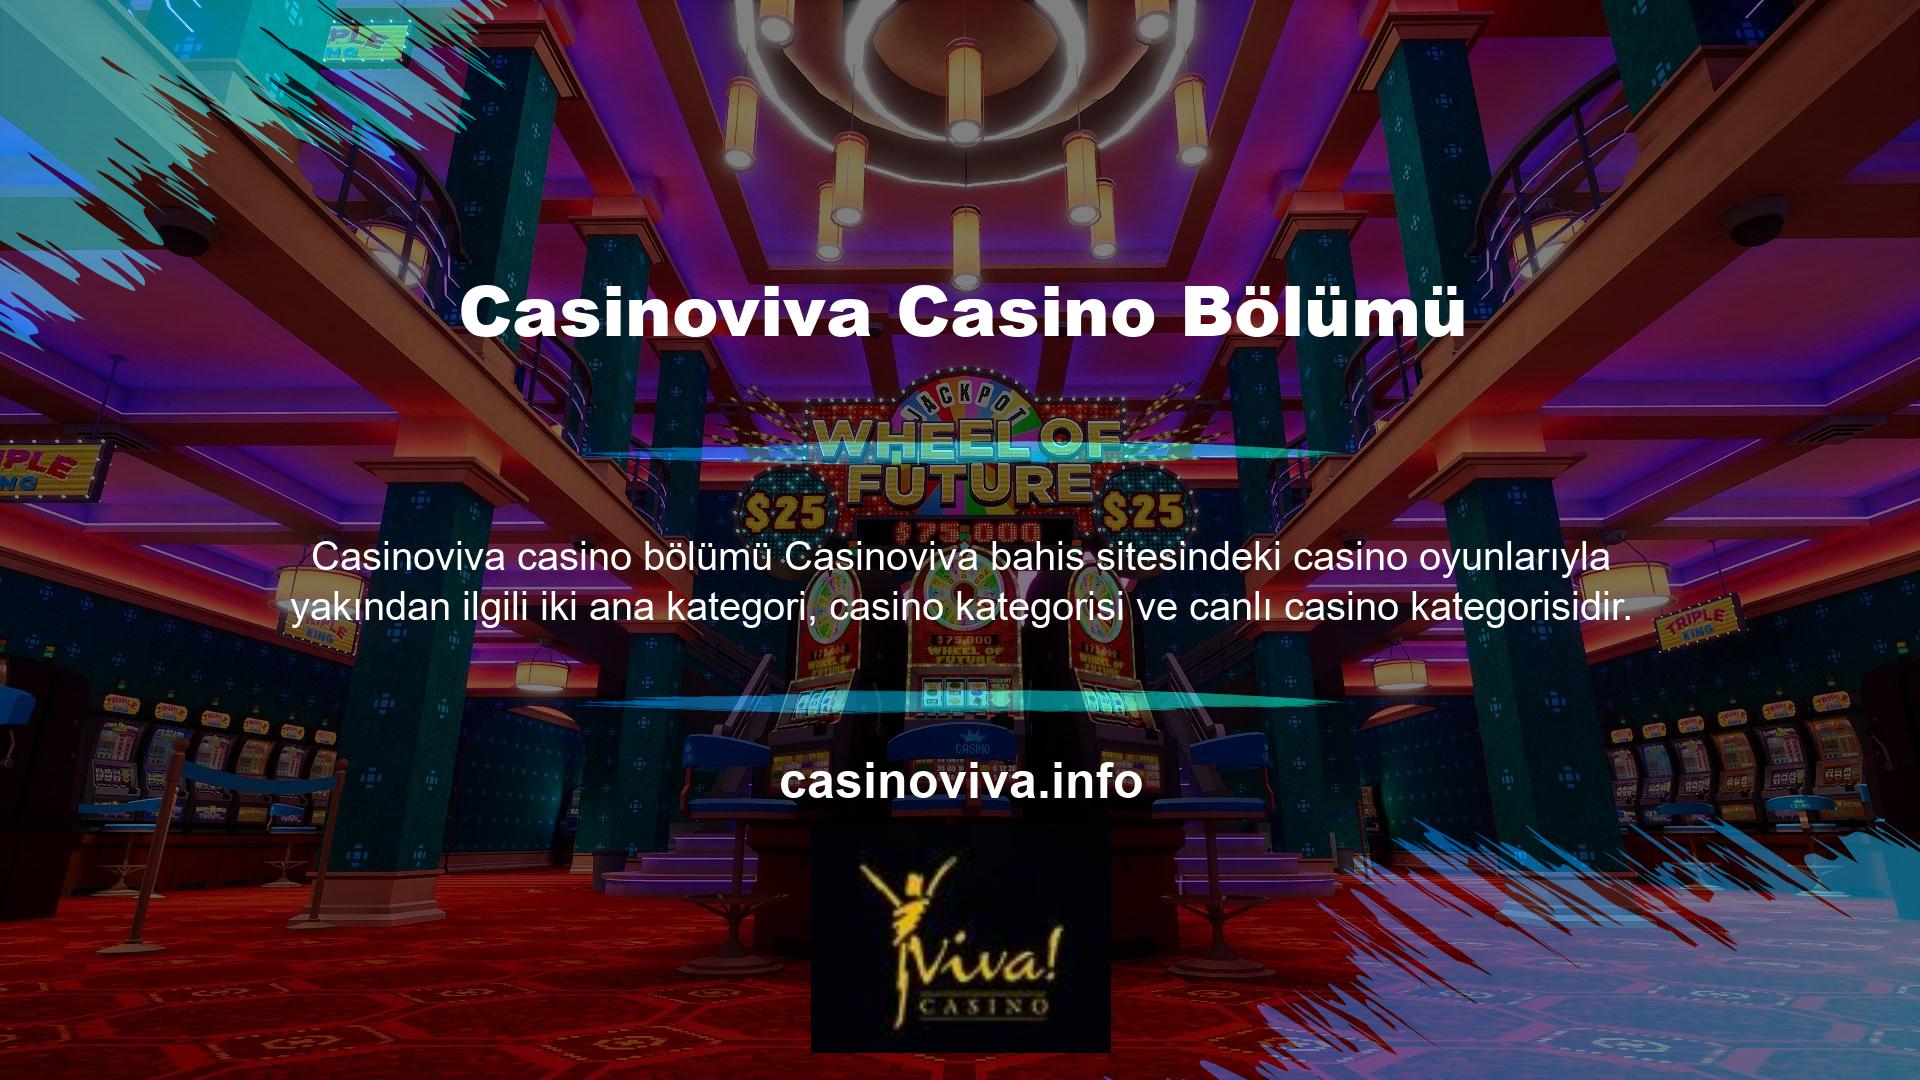 Bu başlık altında incelediğimiz casino bölümüne giriş yapmak için sitenin ana sayfasında yer alan “Casino” sekmesine tıklamanız yeterlidir